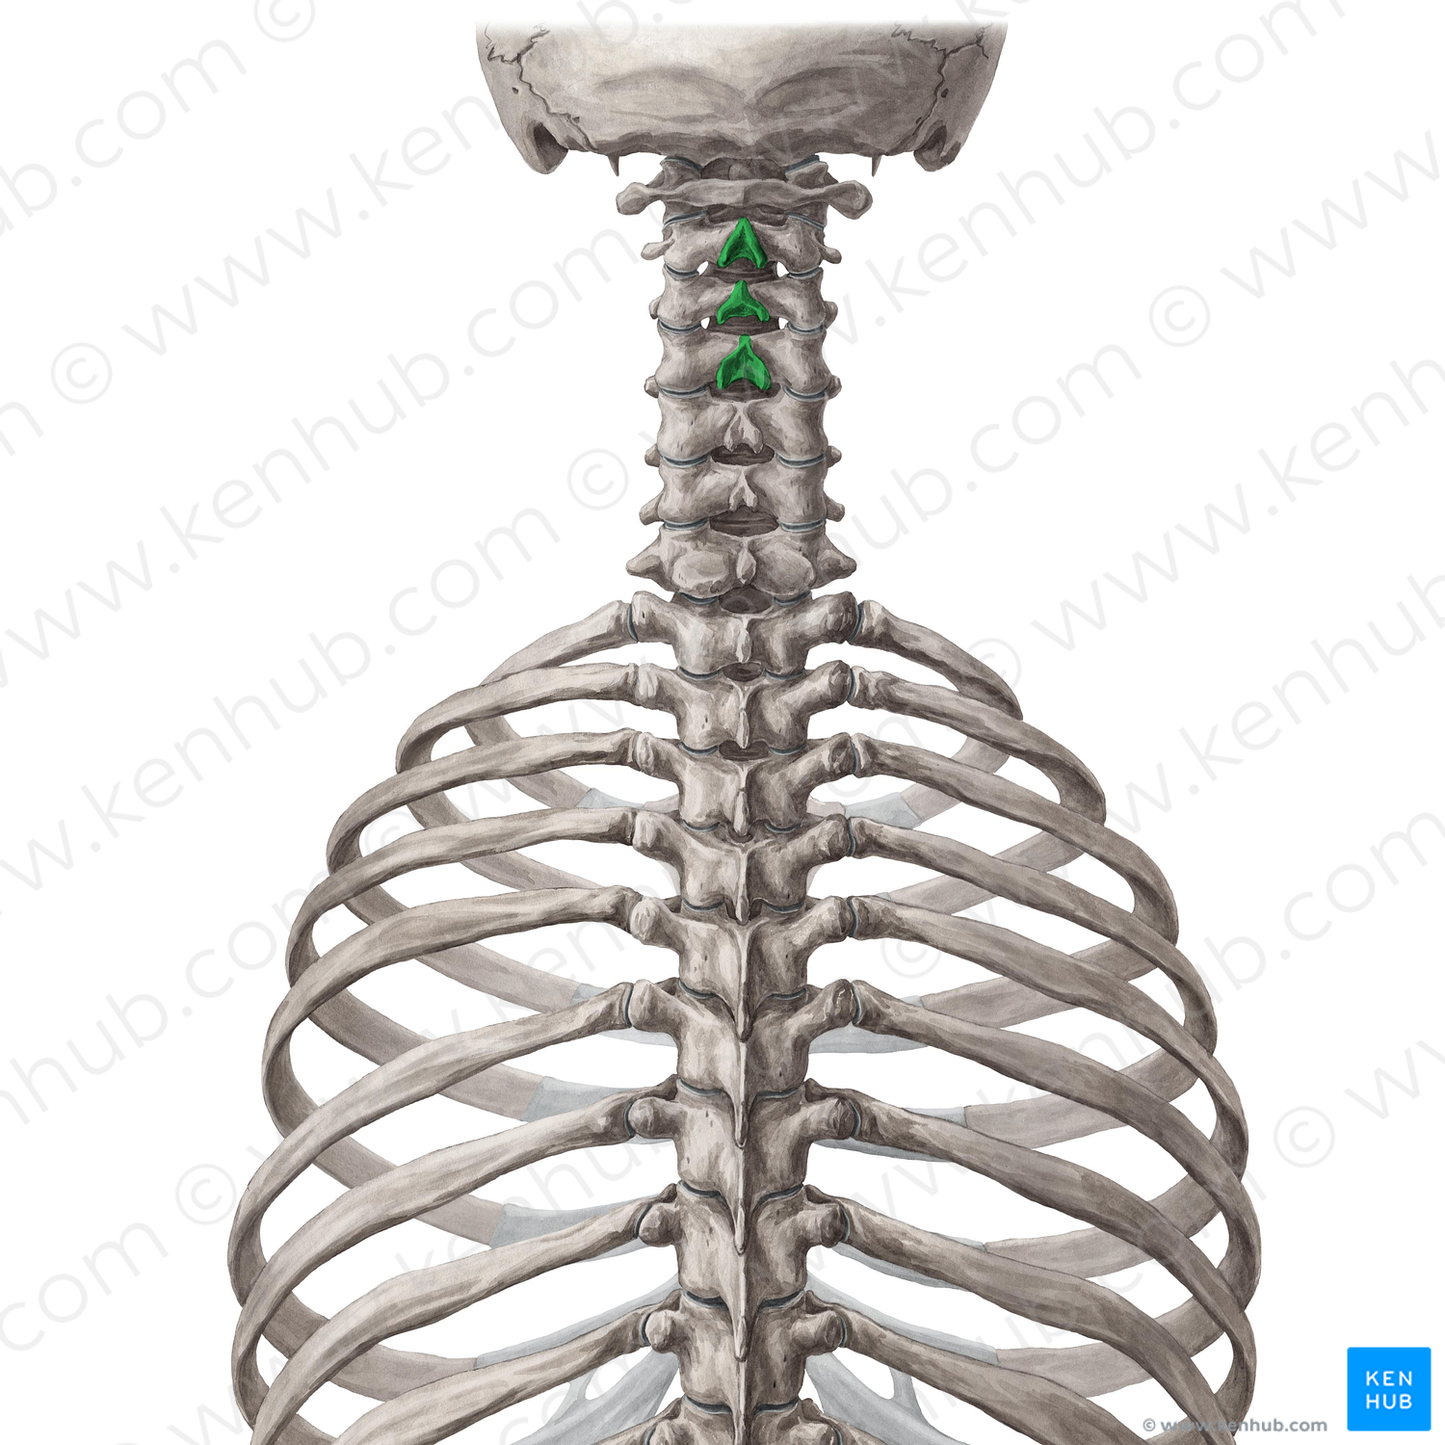 Spinous processes of vertebrae C2-C4 (#10996)